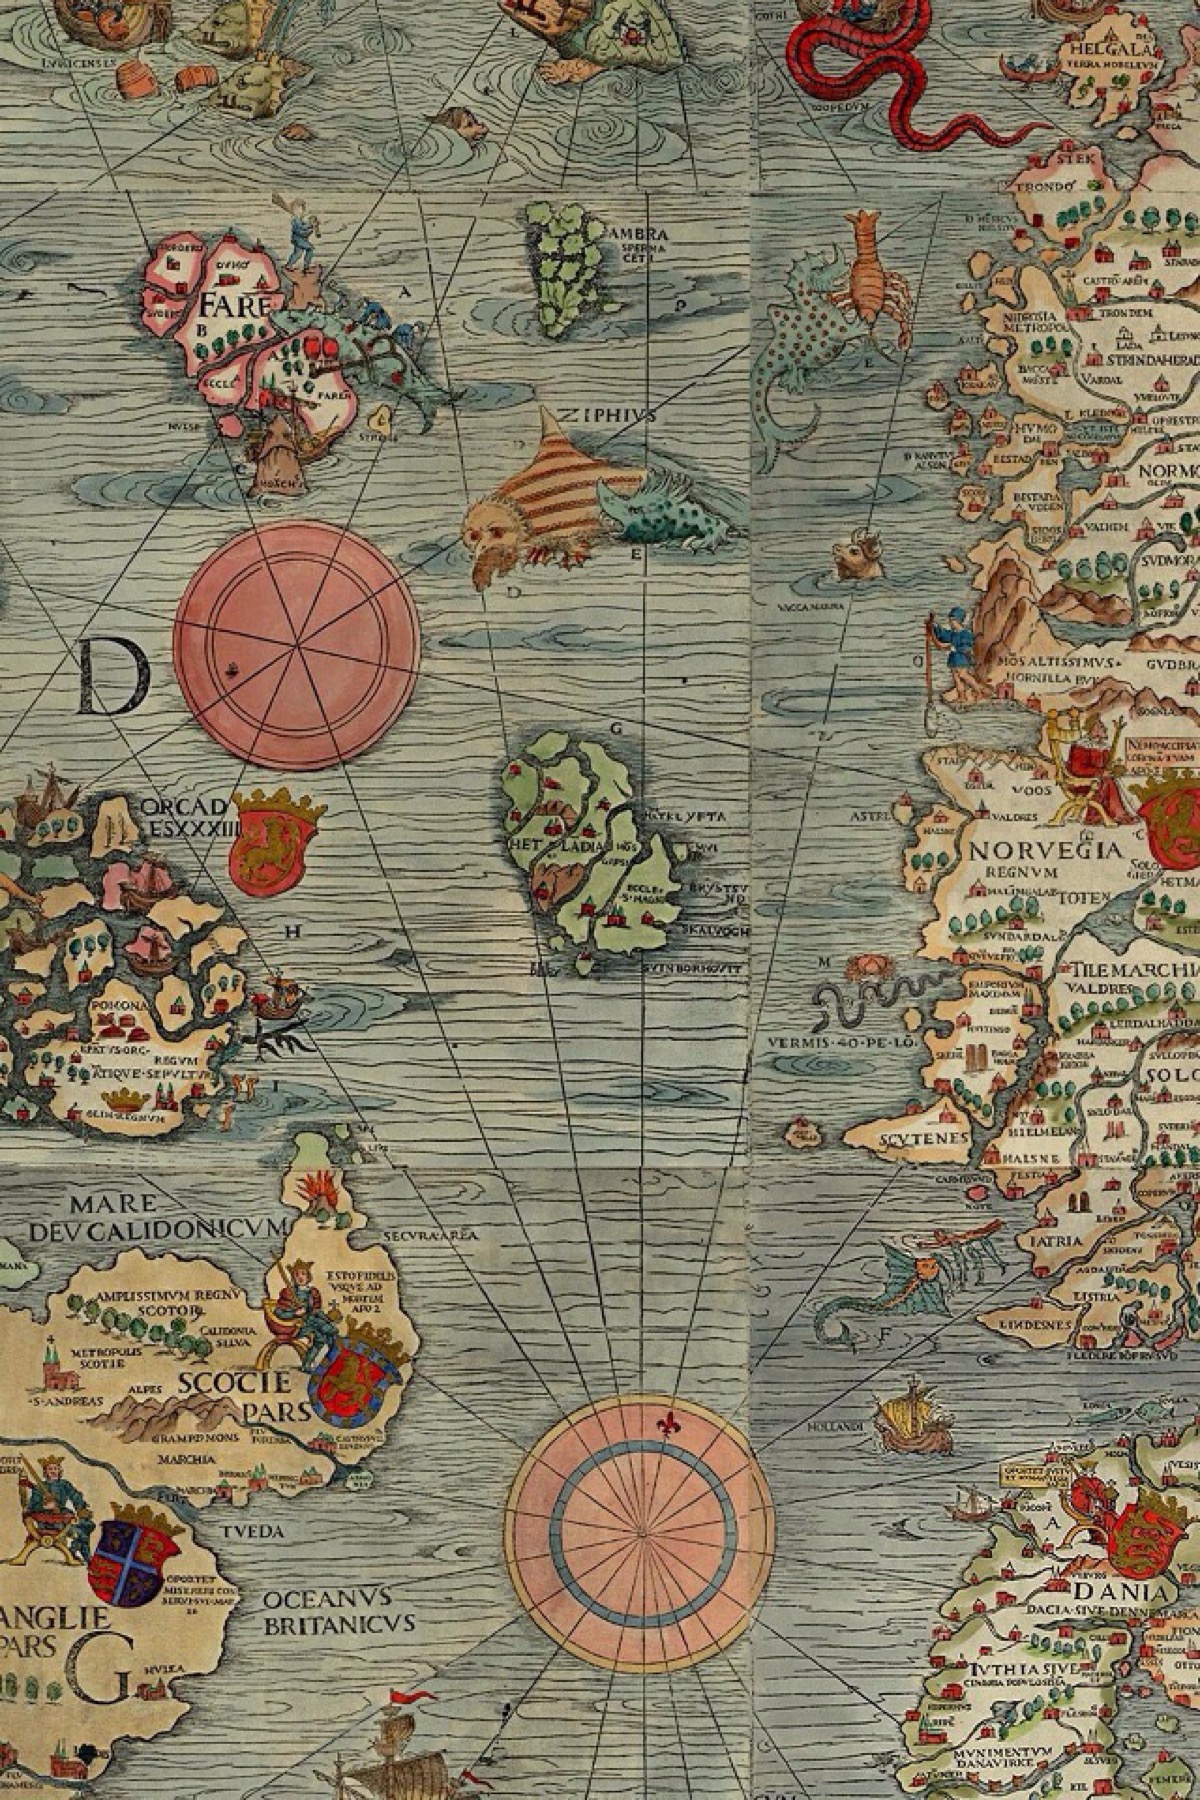 carta marina 海图:世界山第一幅绘有北欧五国的彩色地图,由瑞典神学